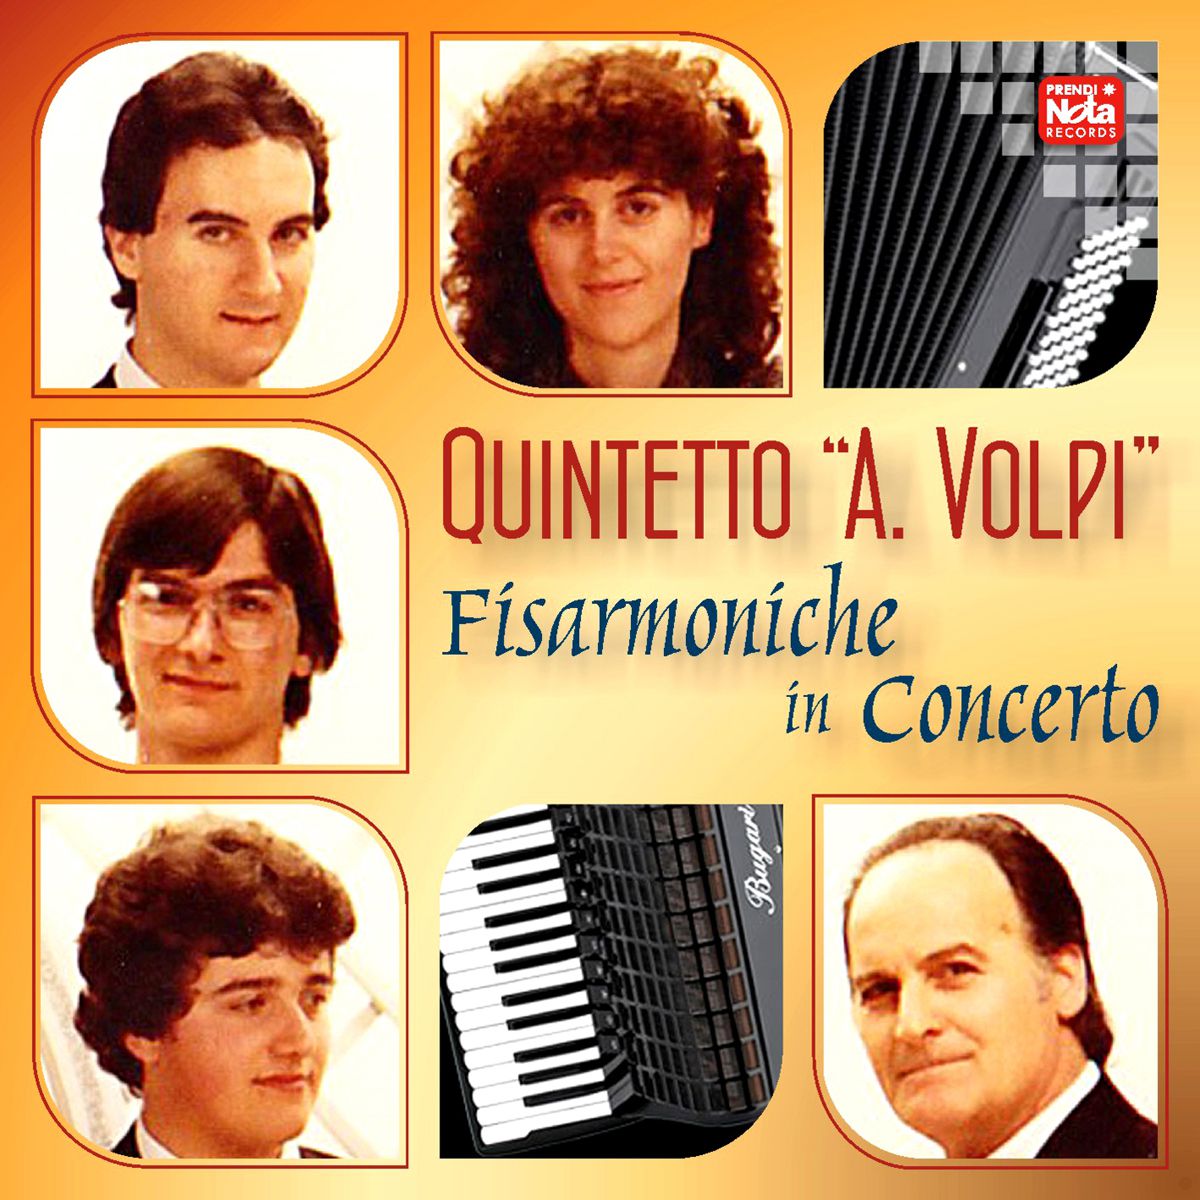 Quintetto A. VOLPI - Fisarmoniche in Concerto